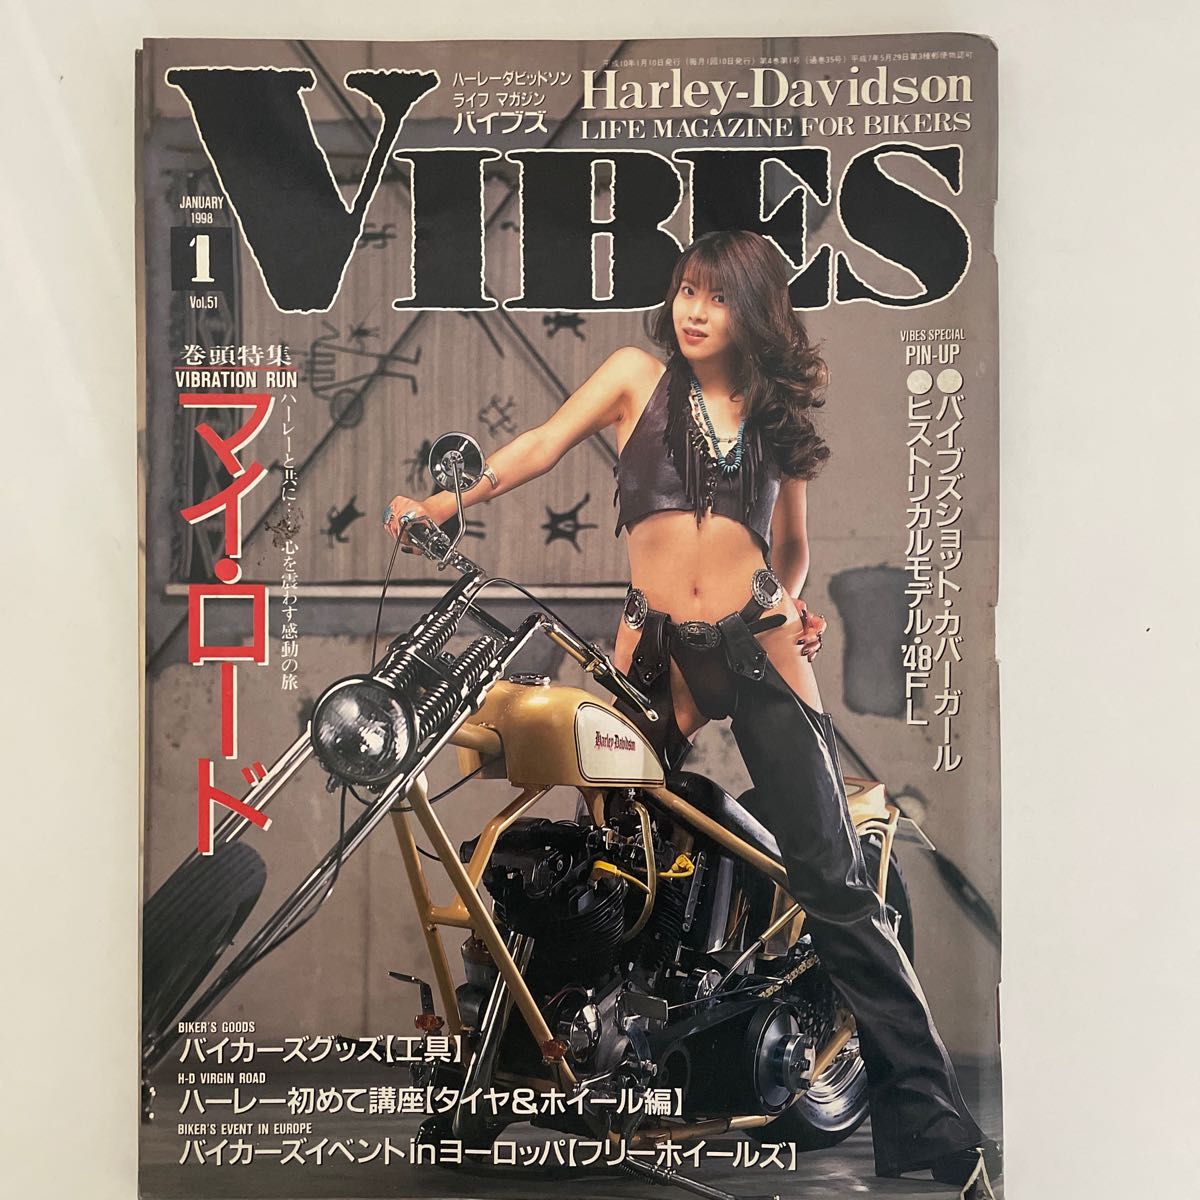 【VIBES (バイブス) 】1998年 01月号 Vol.51 小野今日子 ハーレーダビッドソン